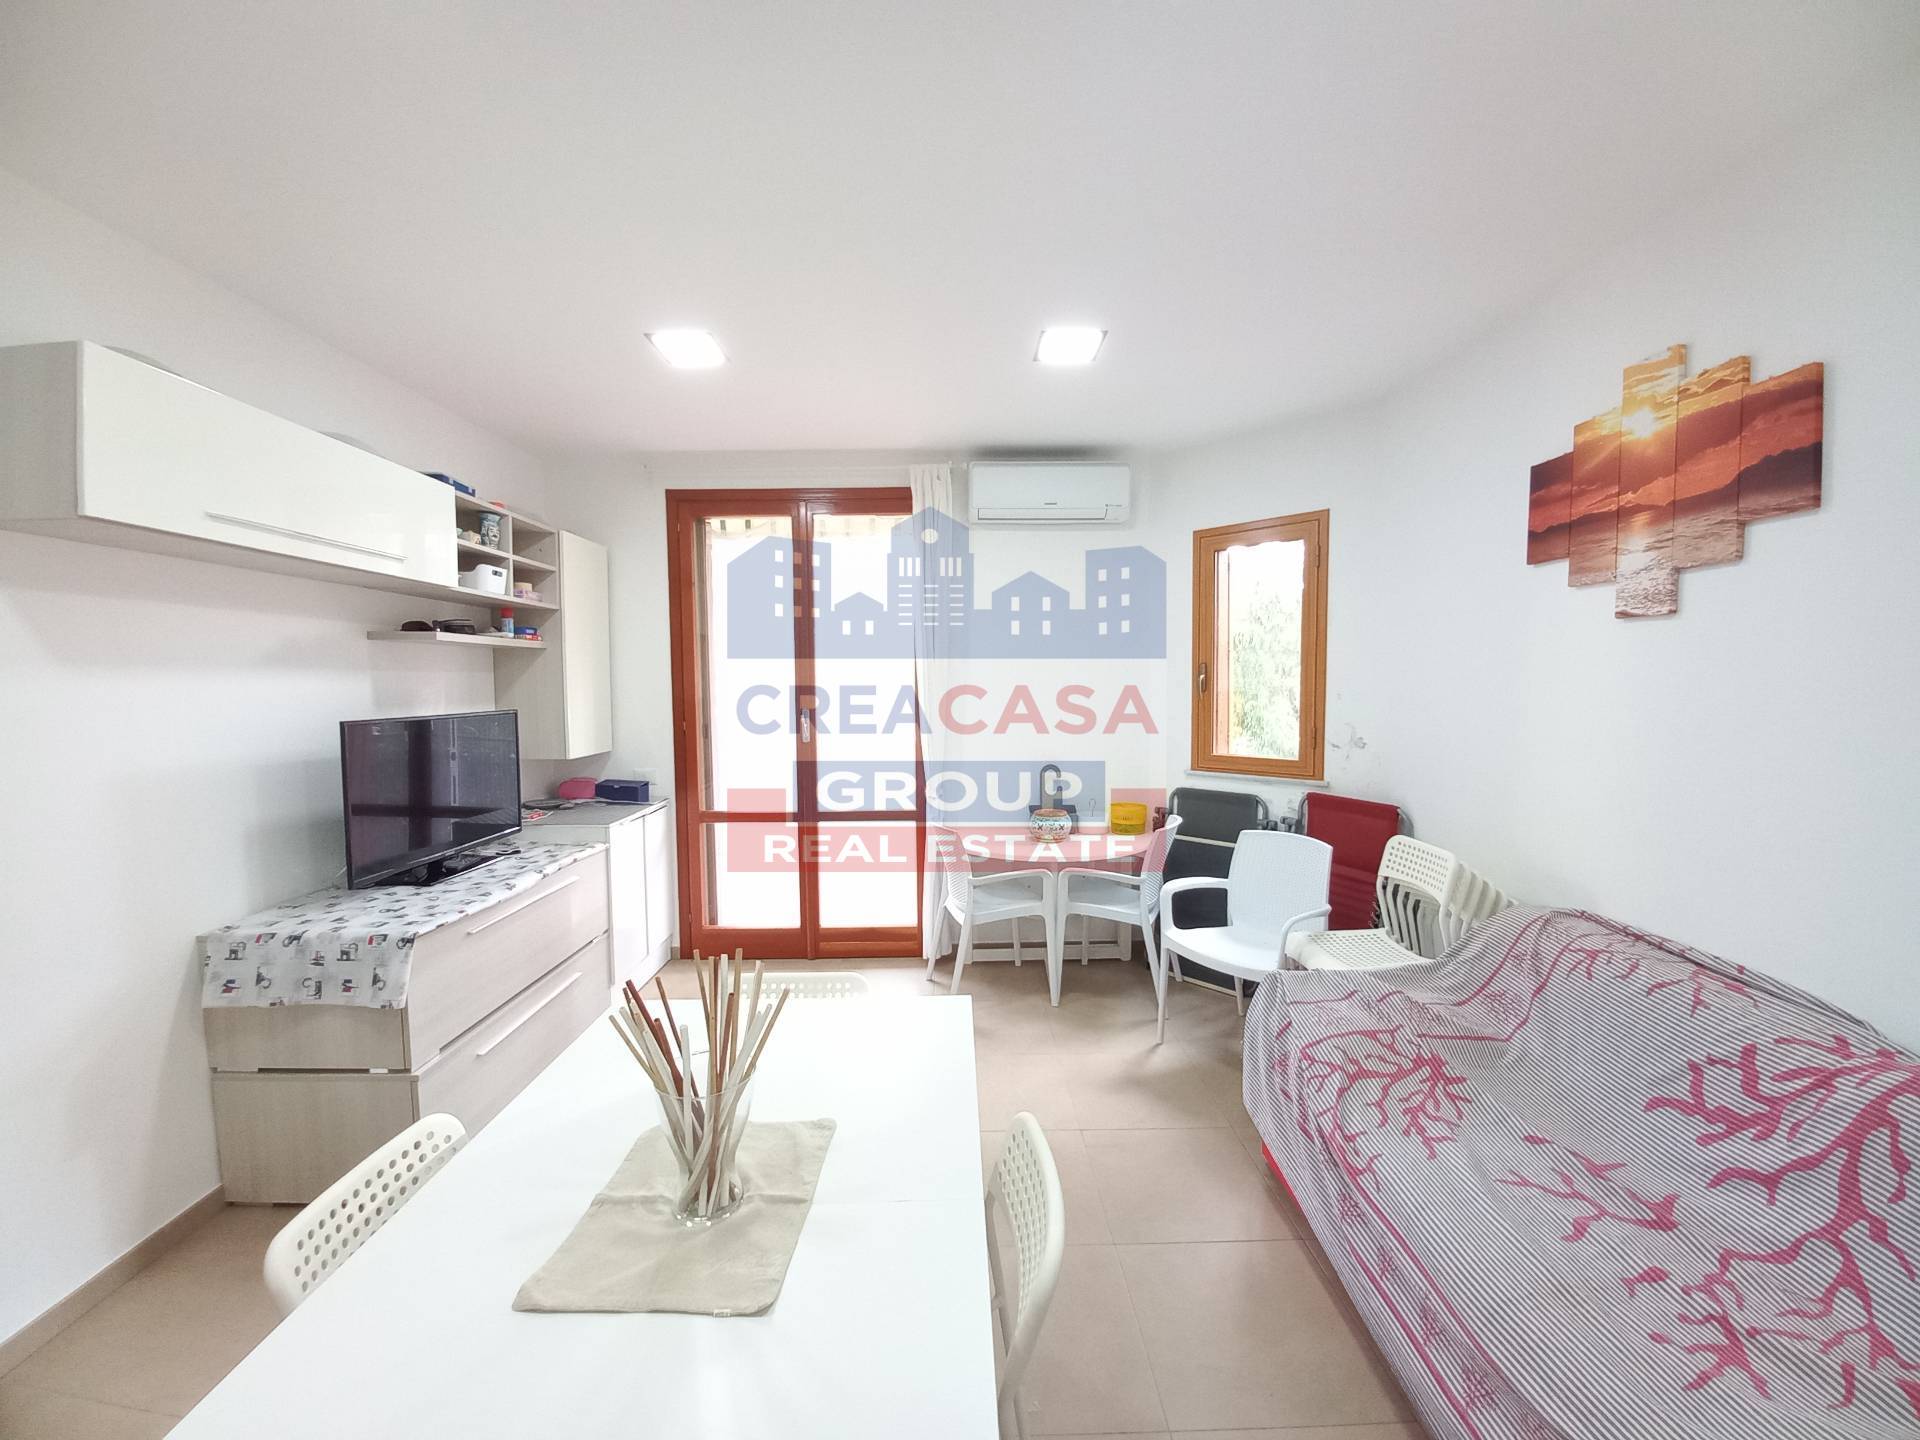 Appartamento in vendita a Giardini-Naxos, 2 locali, prezzo € 115.000 | PortaleAgenzieImmobiliari.it